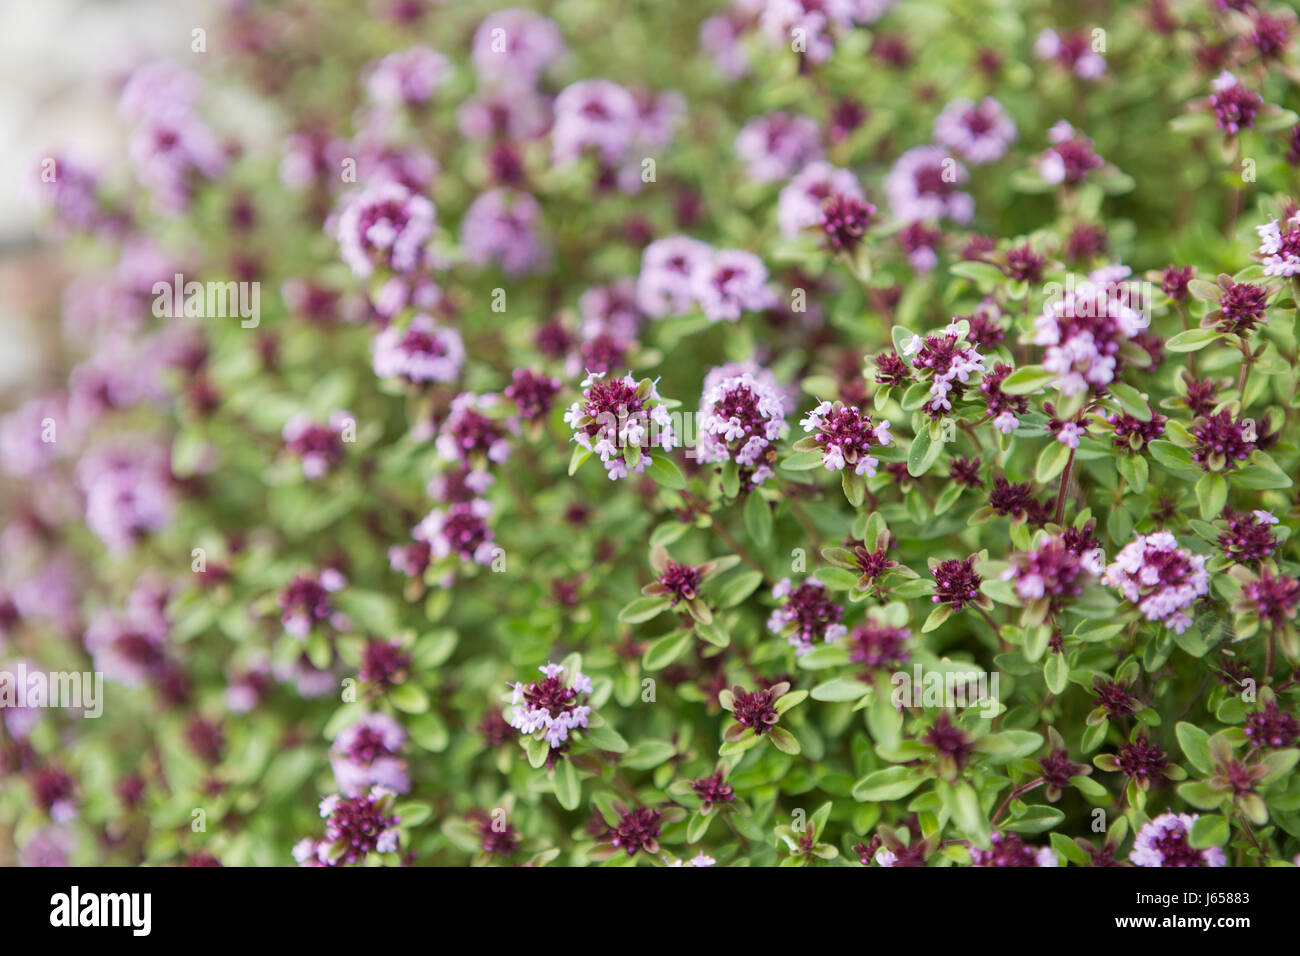 Flowering thyme, (thymus vulgaris). Stock Photo